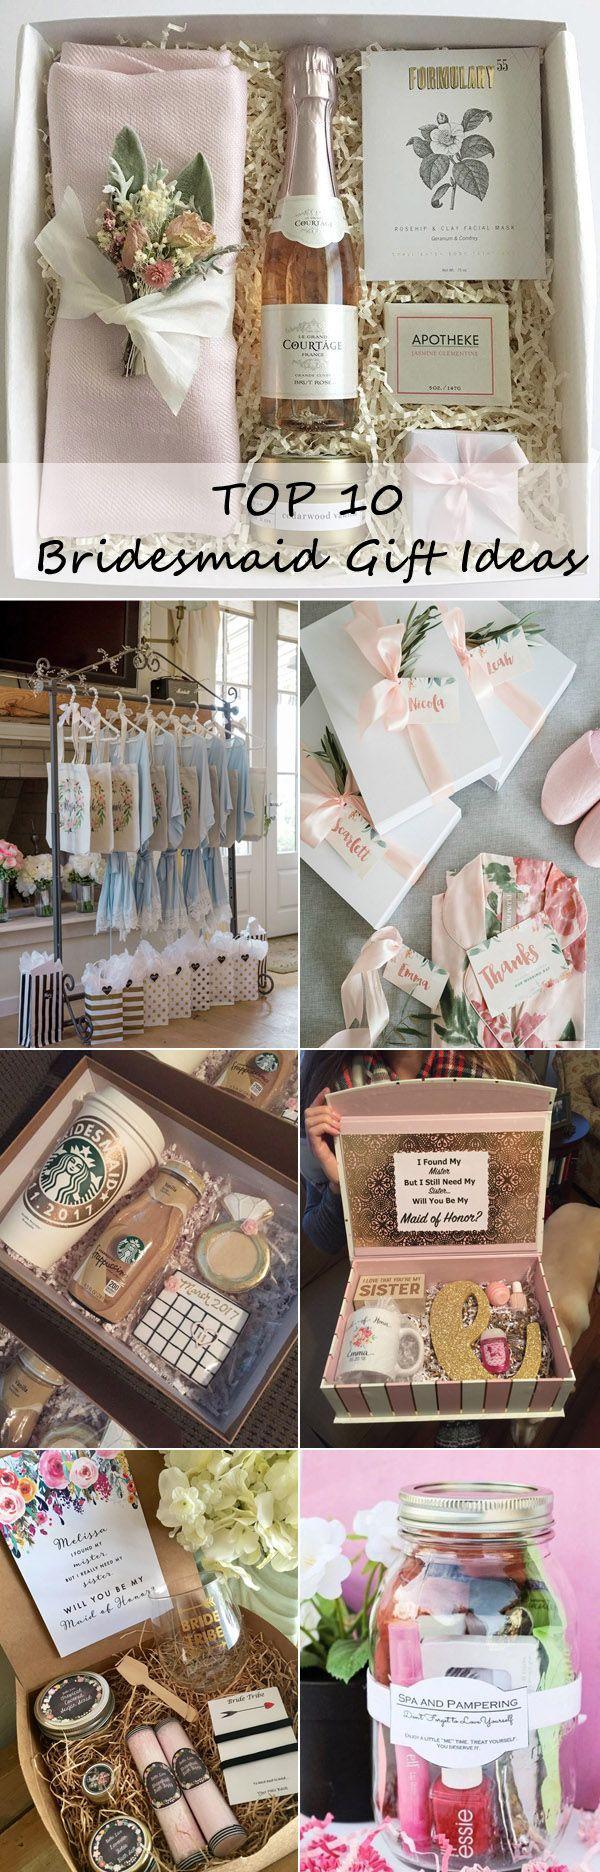 Hochzeit - Top 10 Bridesmaid Gift Ideas Your Girls Will Love